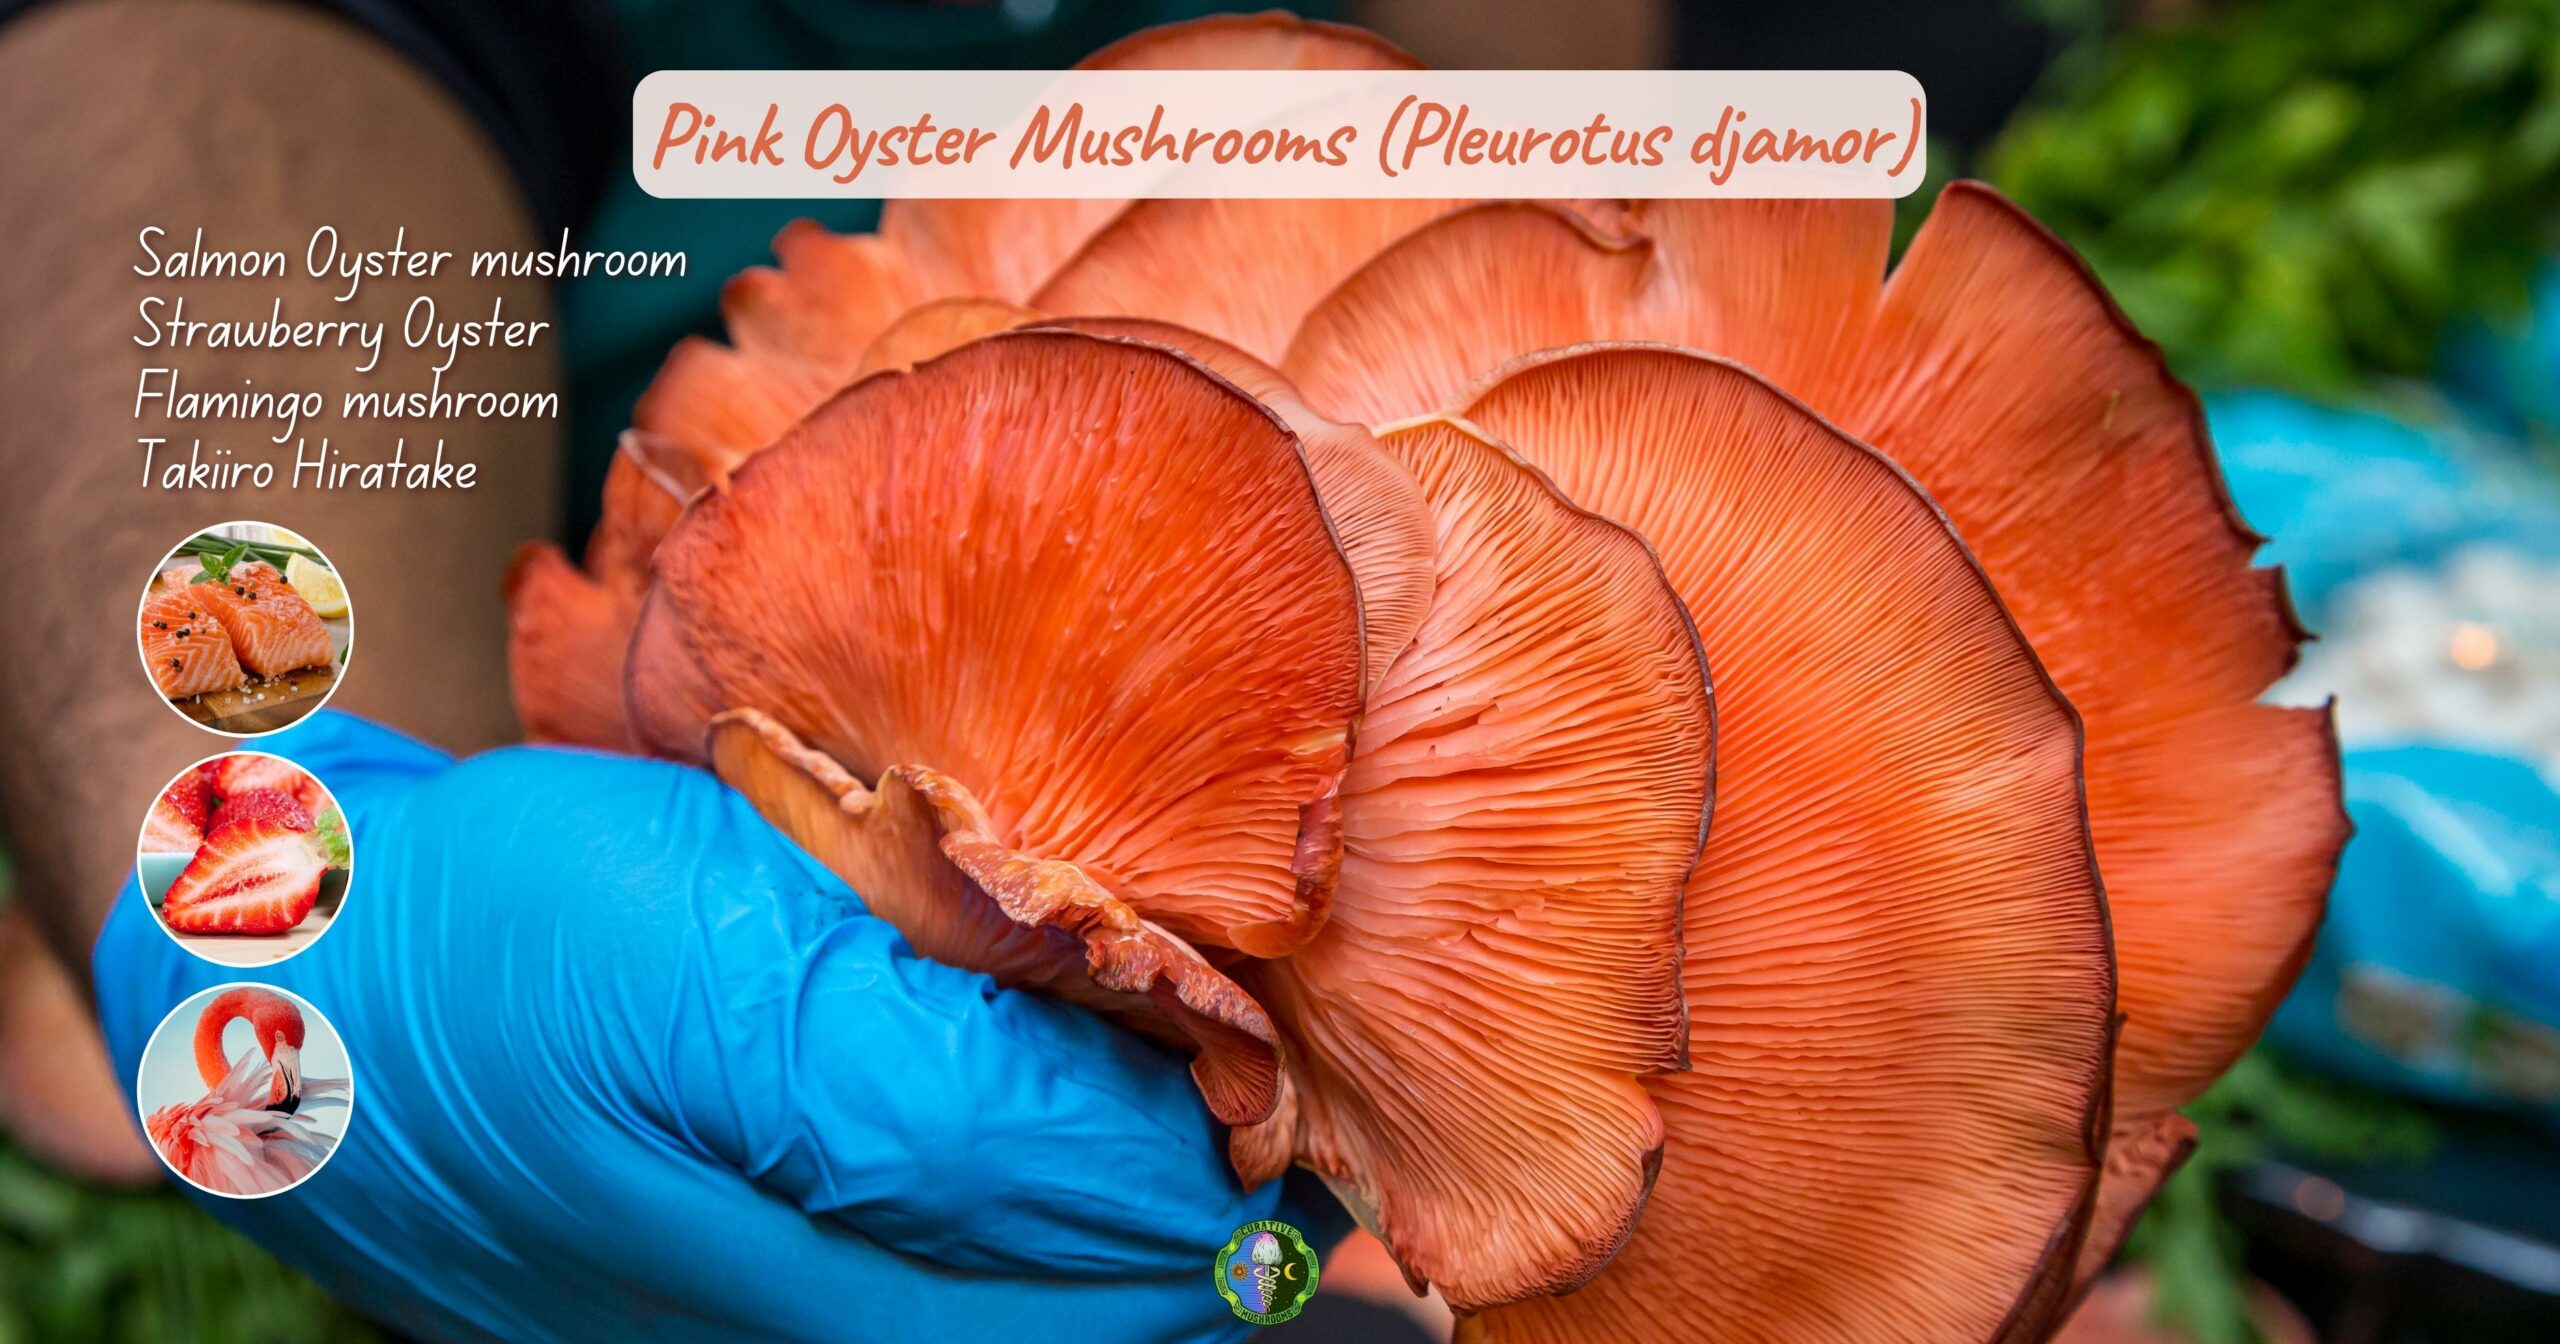 What are Pink Oyster mushrooms - Pleurotus djamor - What classification is a Pink Oyster mushroom - Salmon Oyster mushroom, Strawberry Oyster, Flamingo mushroom, Takiiro Hiratake